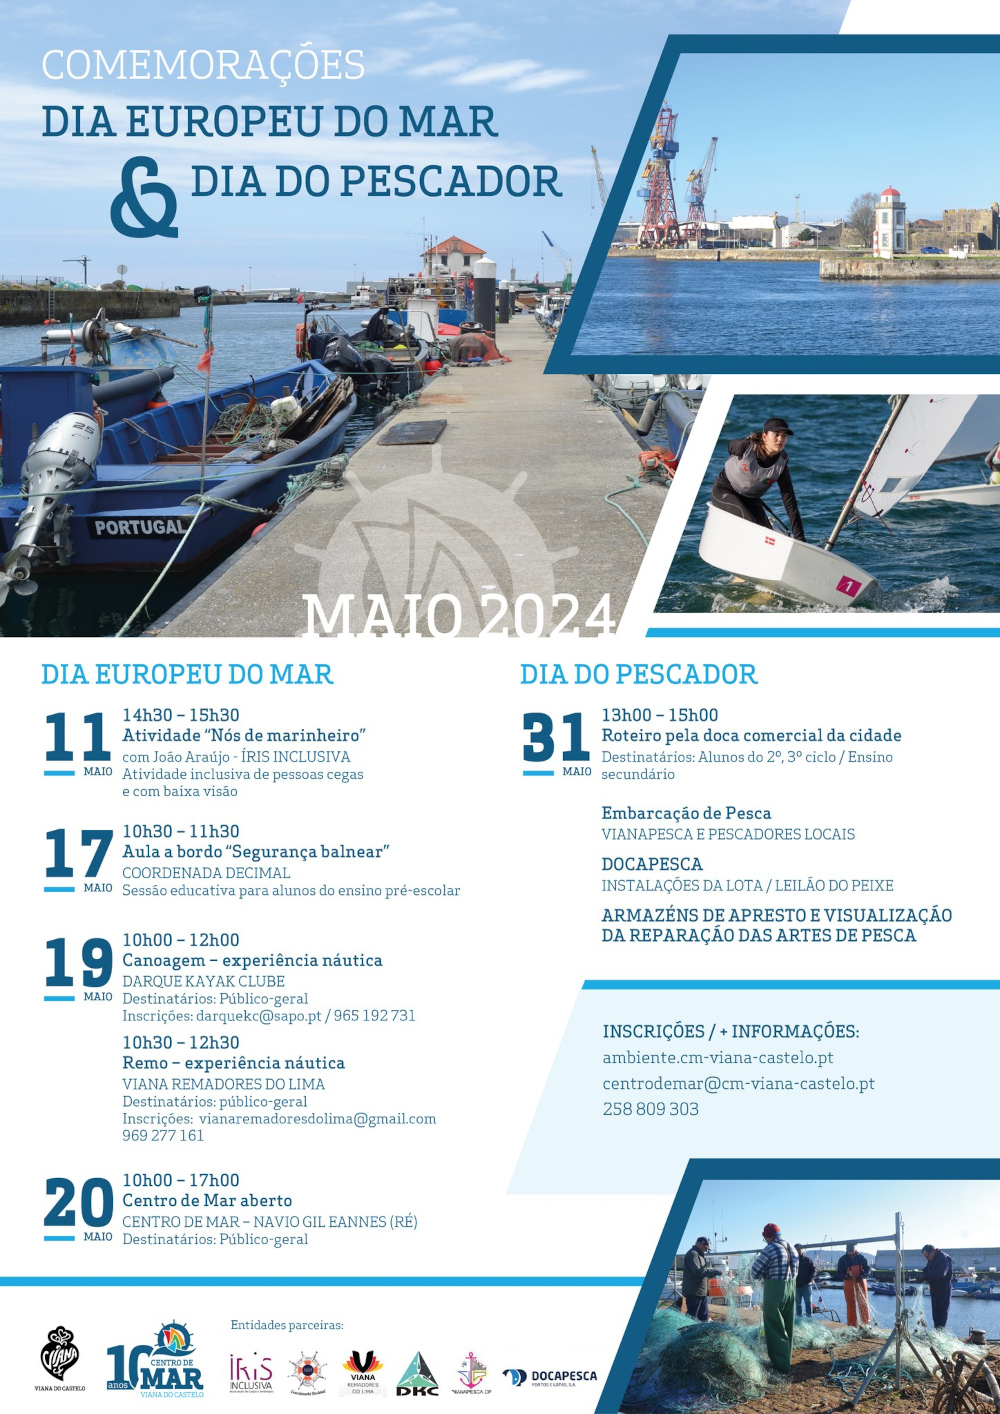 Cartaz com todo o programa das Comemorações do Dia Europeu do Mar e Dia do Pescador